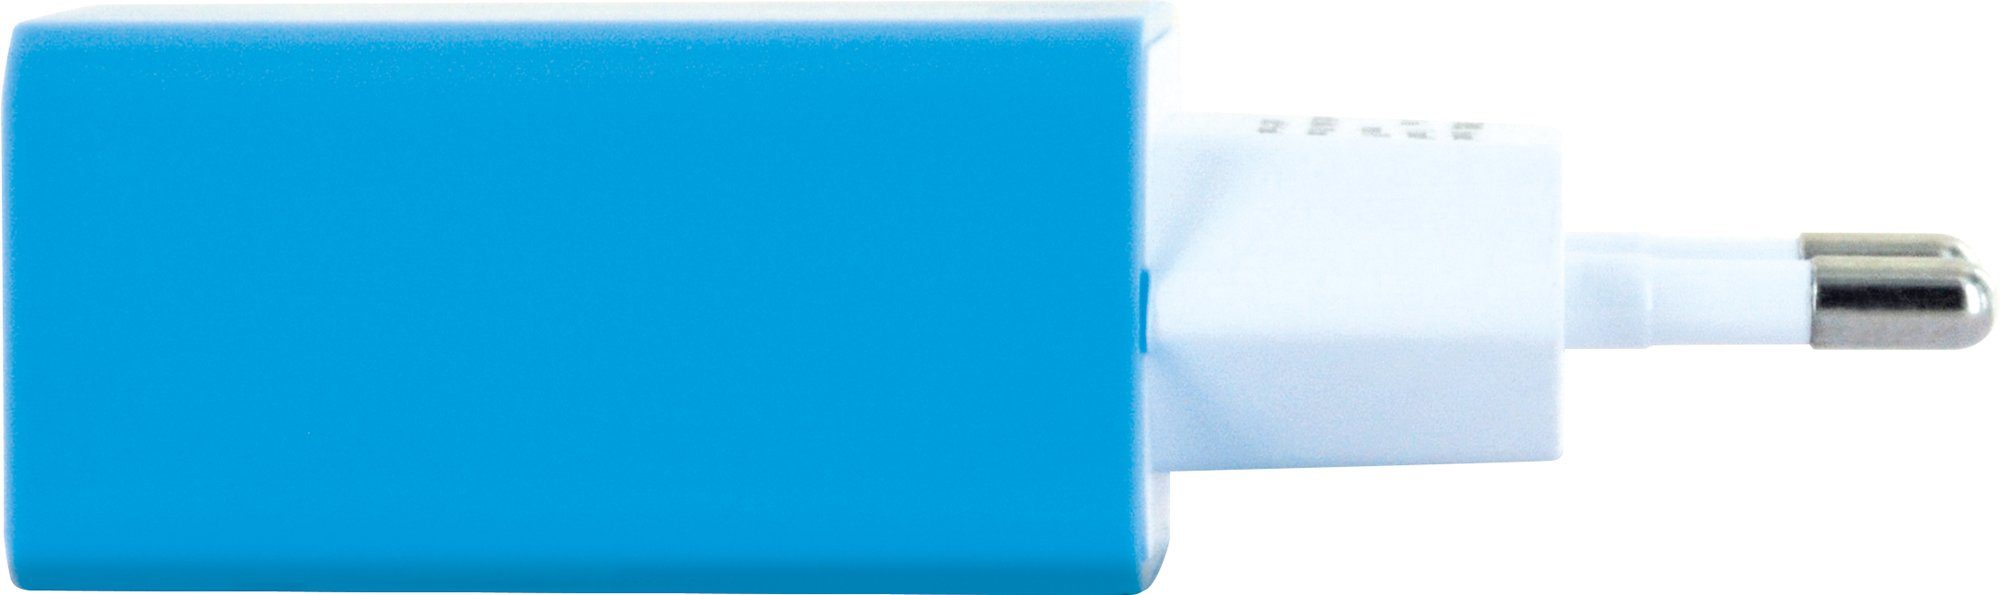 511 Multi-Schutz blau Schwaiger KFZ-Adapter Sicherheitssystem Eurostecker LAD300B USB A Buchse, zu integriertes 2.0